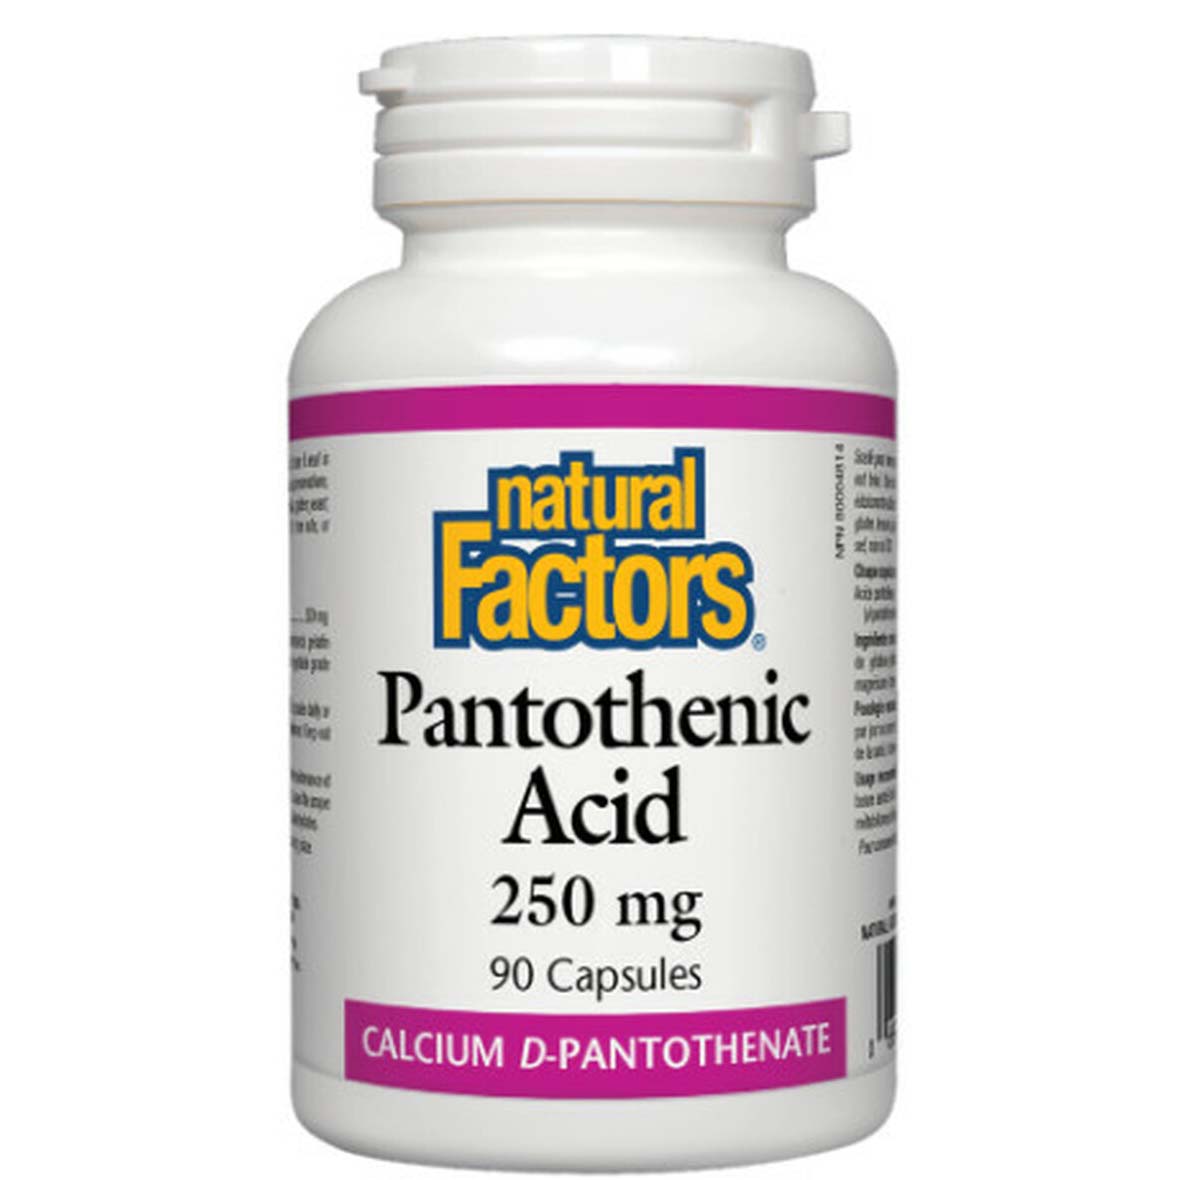 Natural Factors Pantothenic Acid 90 Capsules 250 mg